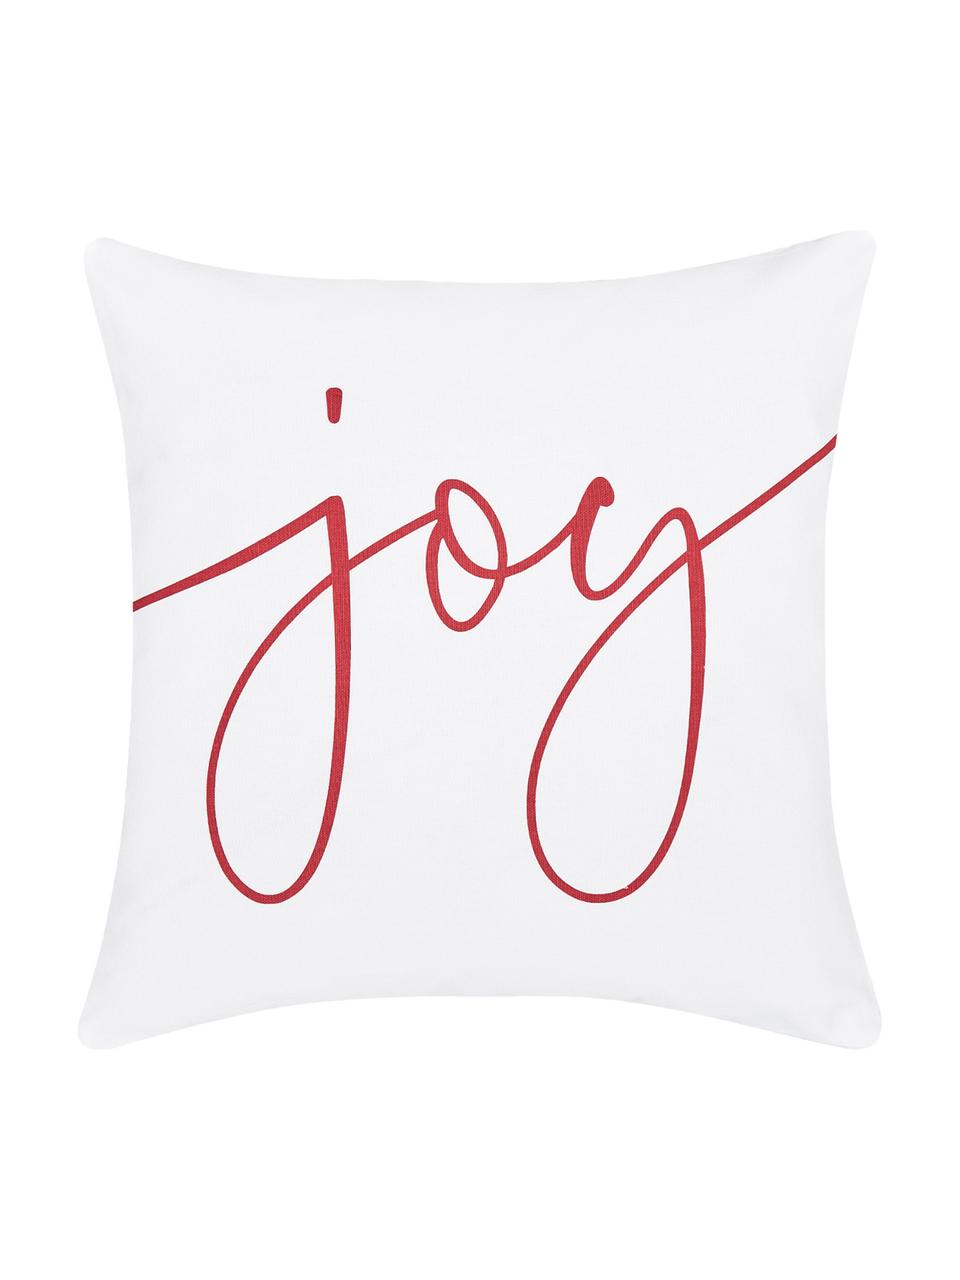 Kissenhülle Joy mit Schriftzug in Weiß-Rot, Baumwolle, Weiß, Rot, 40 x 40 cm